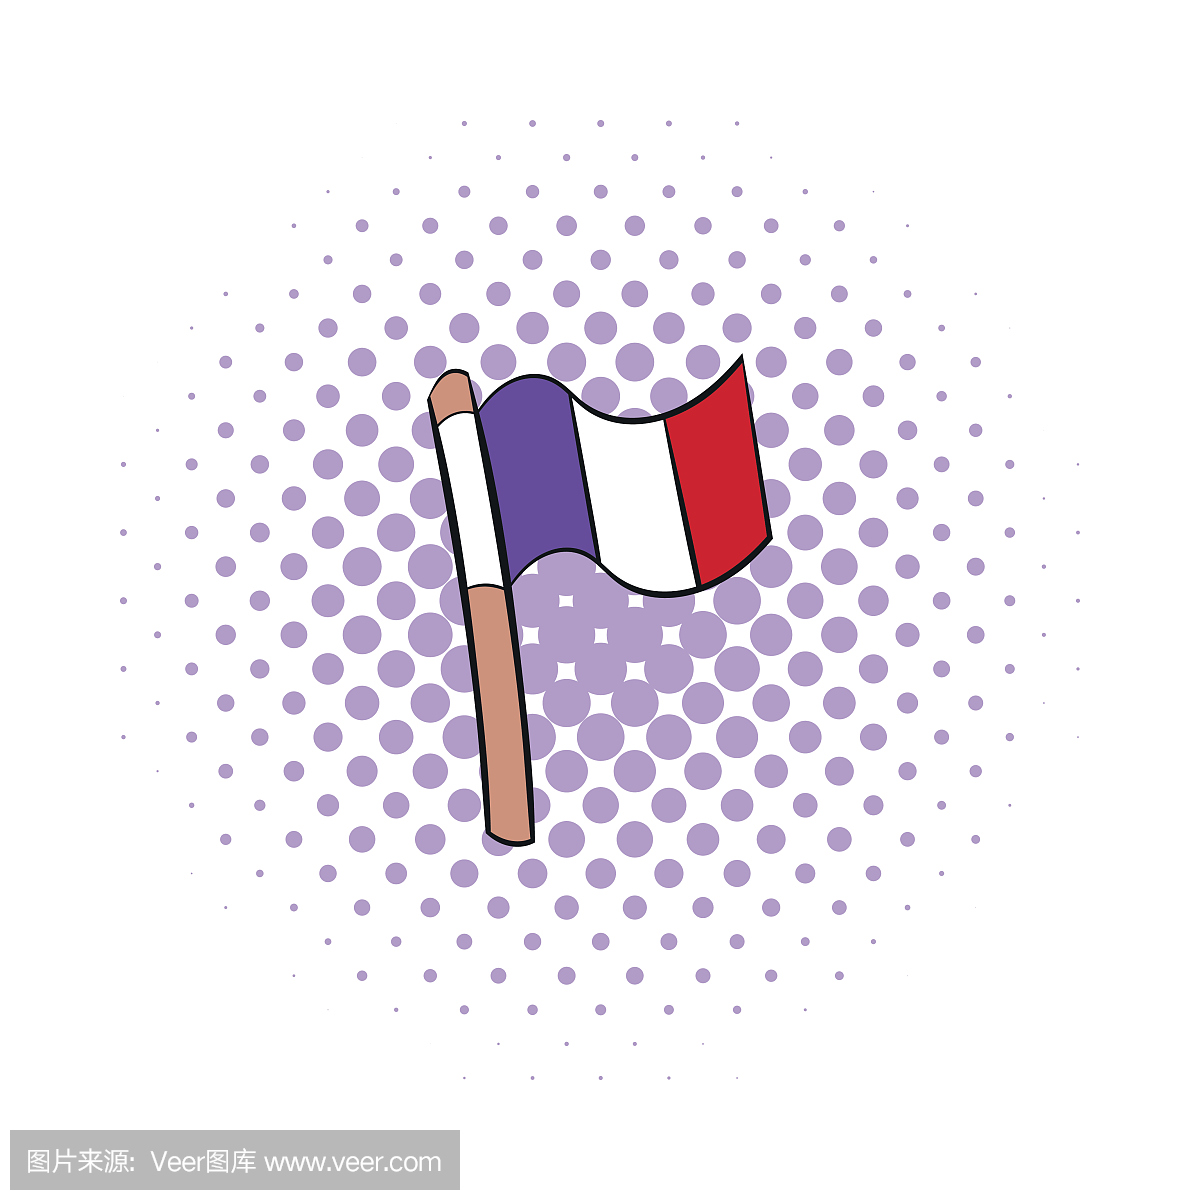 国旗的漫画风格的法国图标